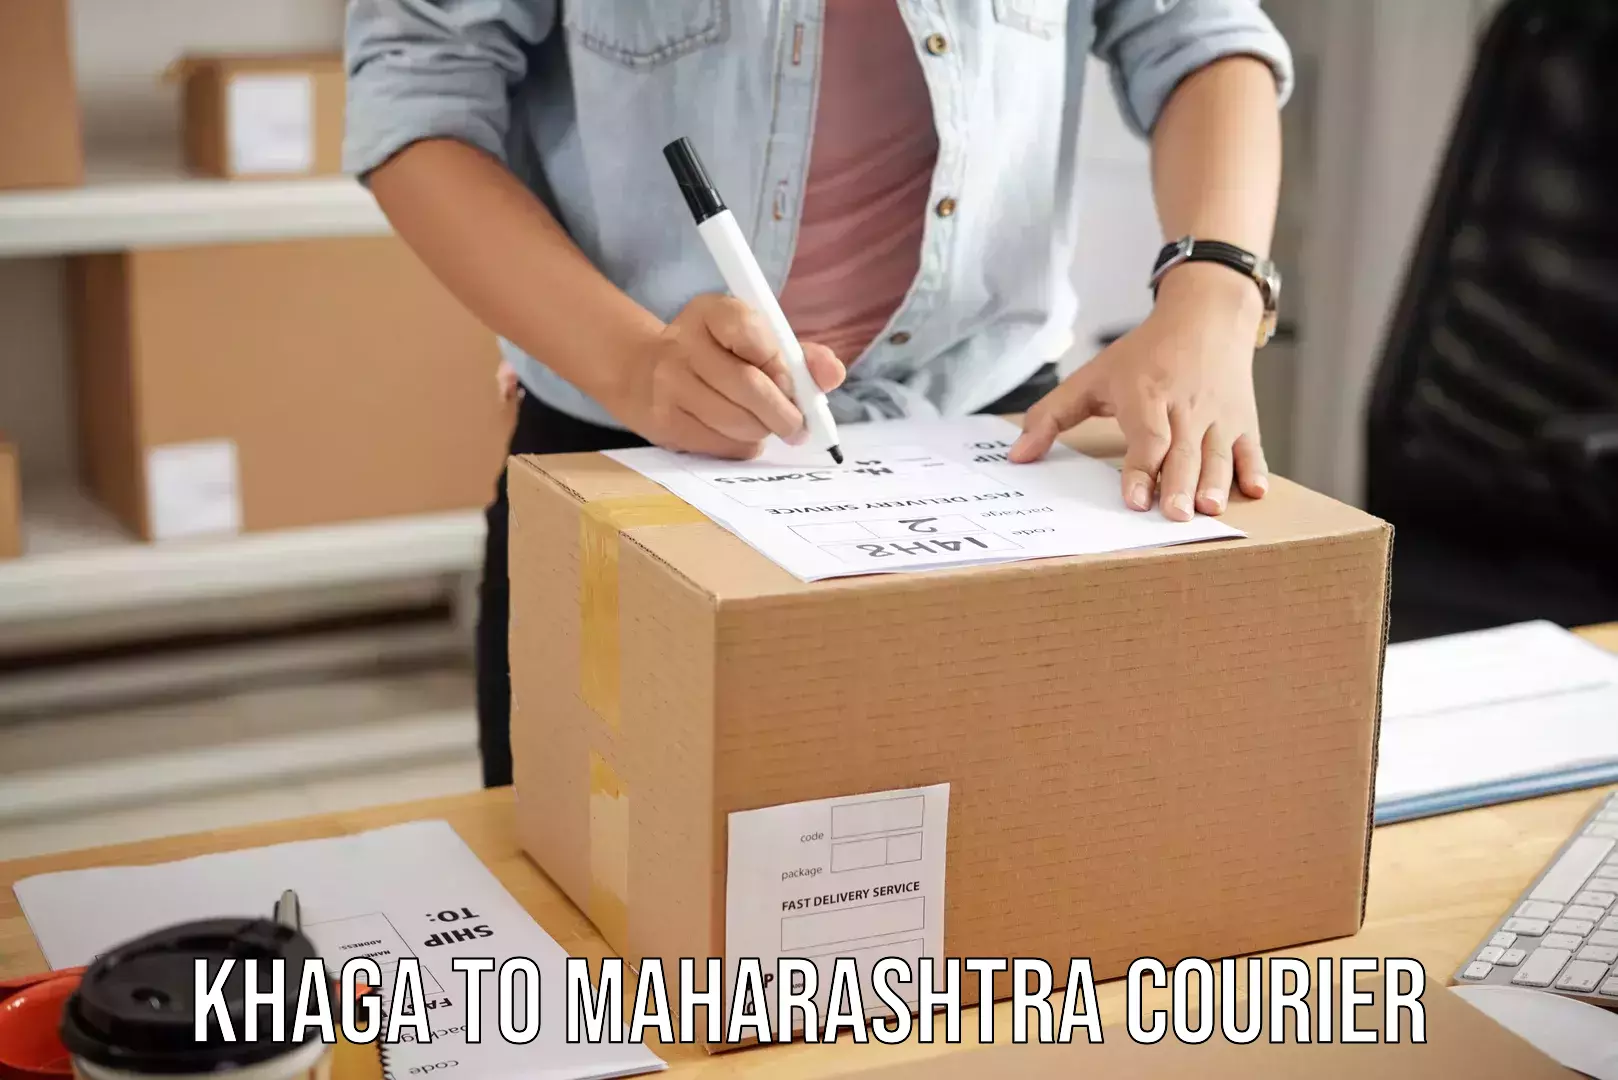 Baggage shipping experts Khaga to Maharashtra